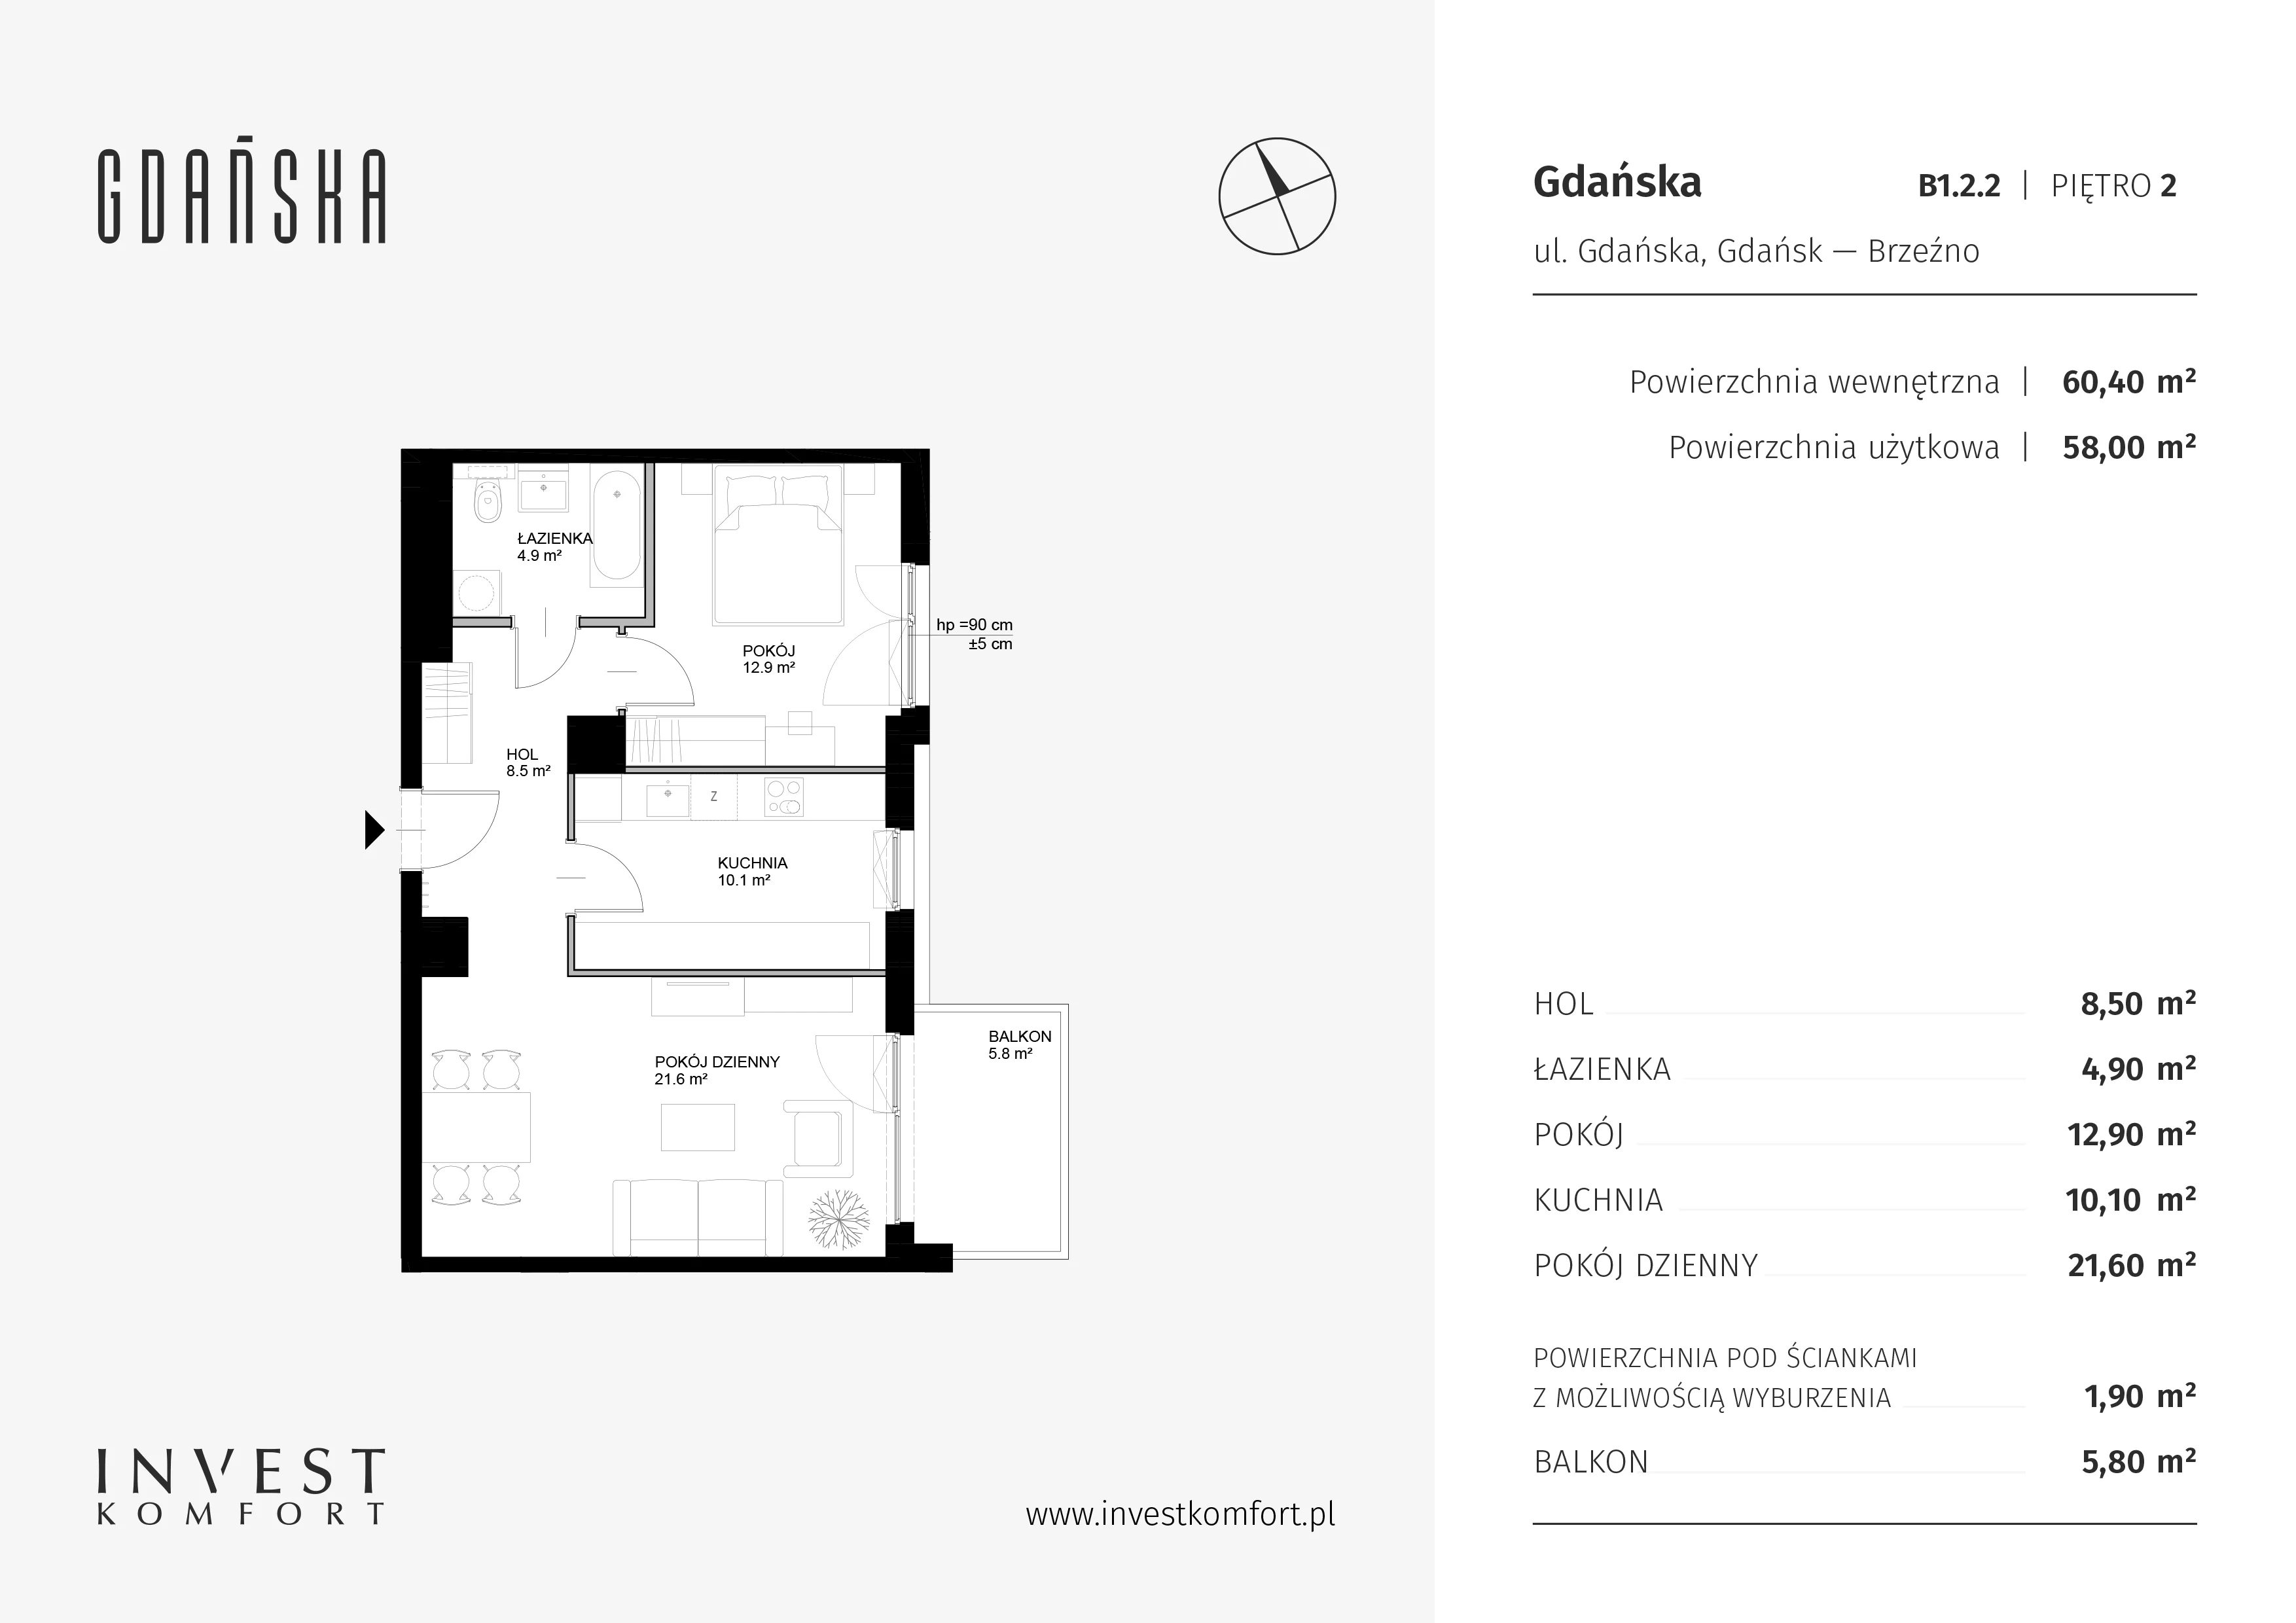 Mieszkanie 60,40 m², piętro 1, oferta nr B1.2.2, Gdańska, Gdańsk, Brzeźno, ul. Gdańska